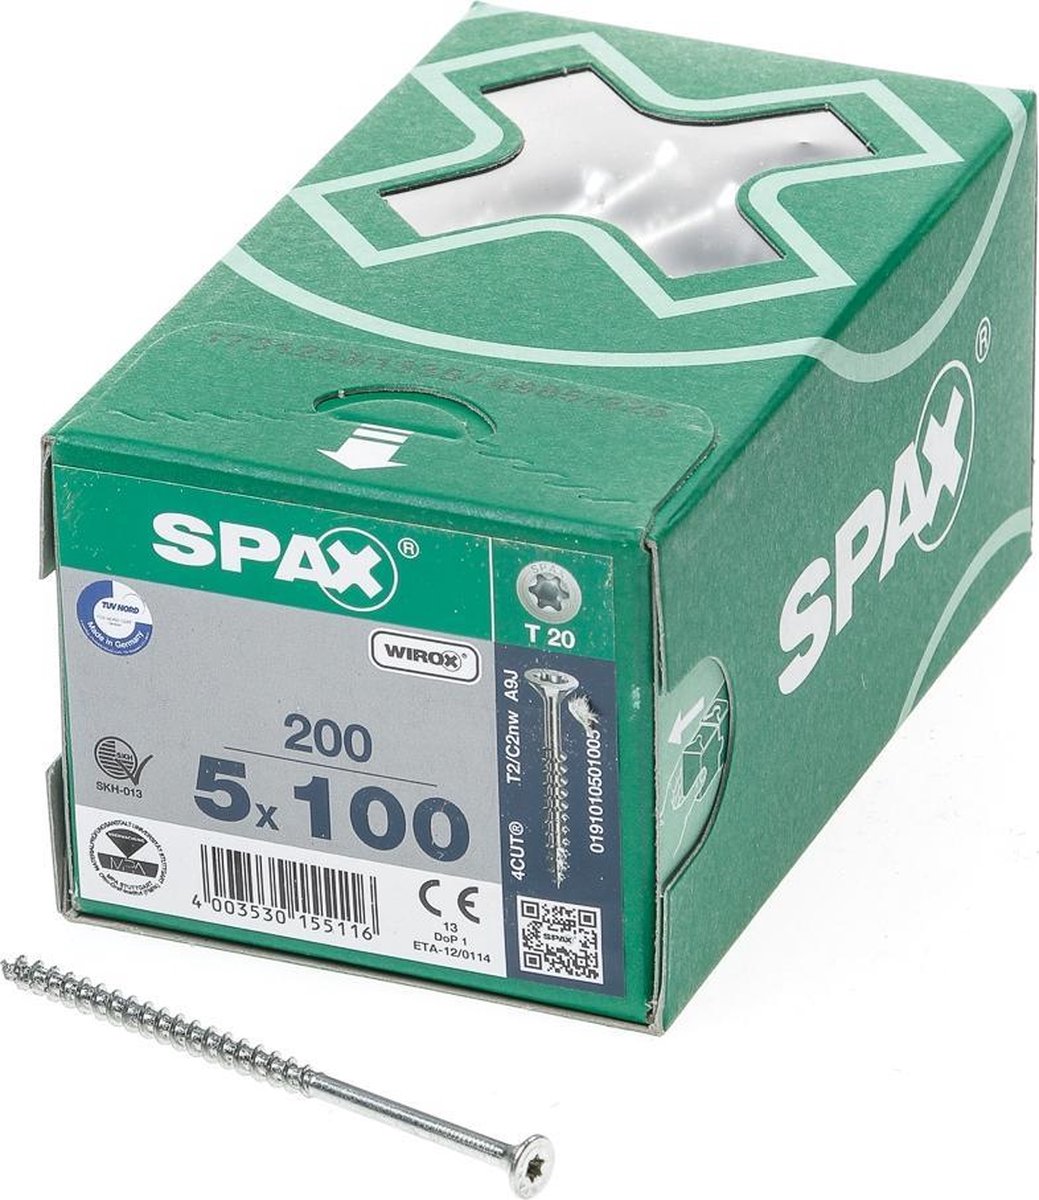 SPAX 191010501005 Universele schroef, Verzonken kop, 5 x 100, Deeldraad, T-STAR plus TX20 - WIROX - 200 stuks - Spax